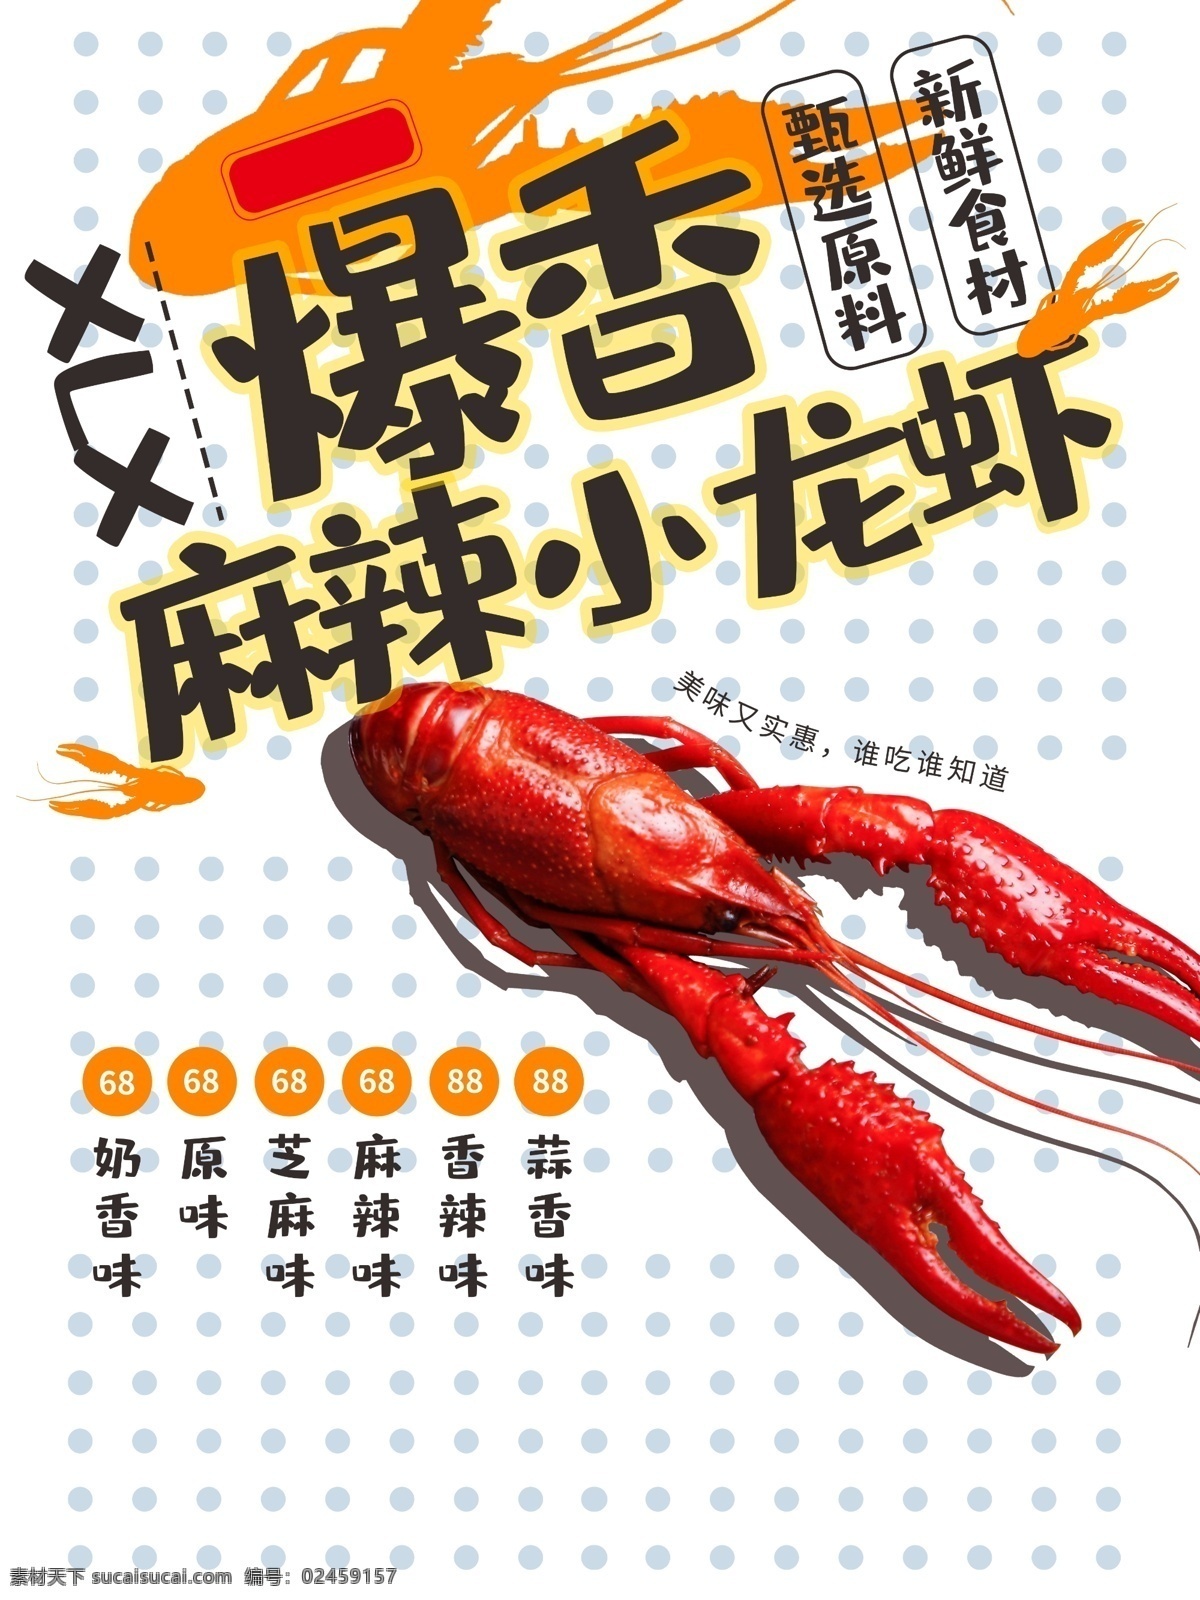 日 系 小 清新 美味 龙虾 饭 美 菜单 促销海报 动感 动漫风 卡通 可爱 麻辣 美食 日式 日系 商业海报 食物 竖版海报